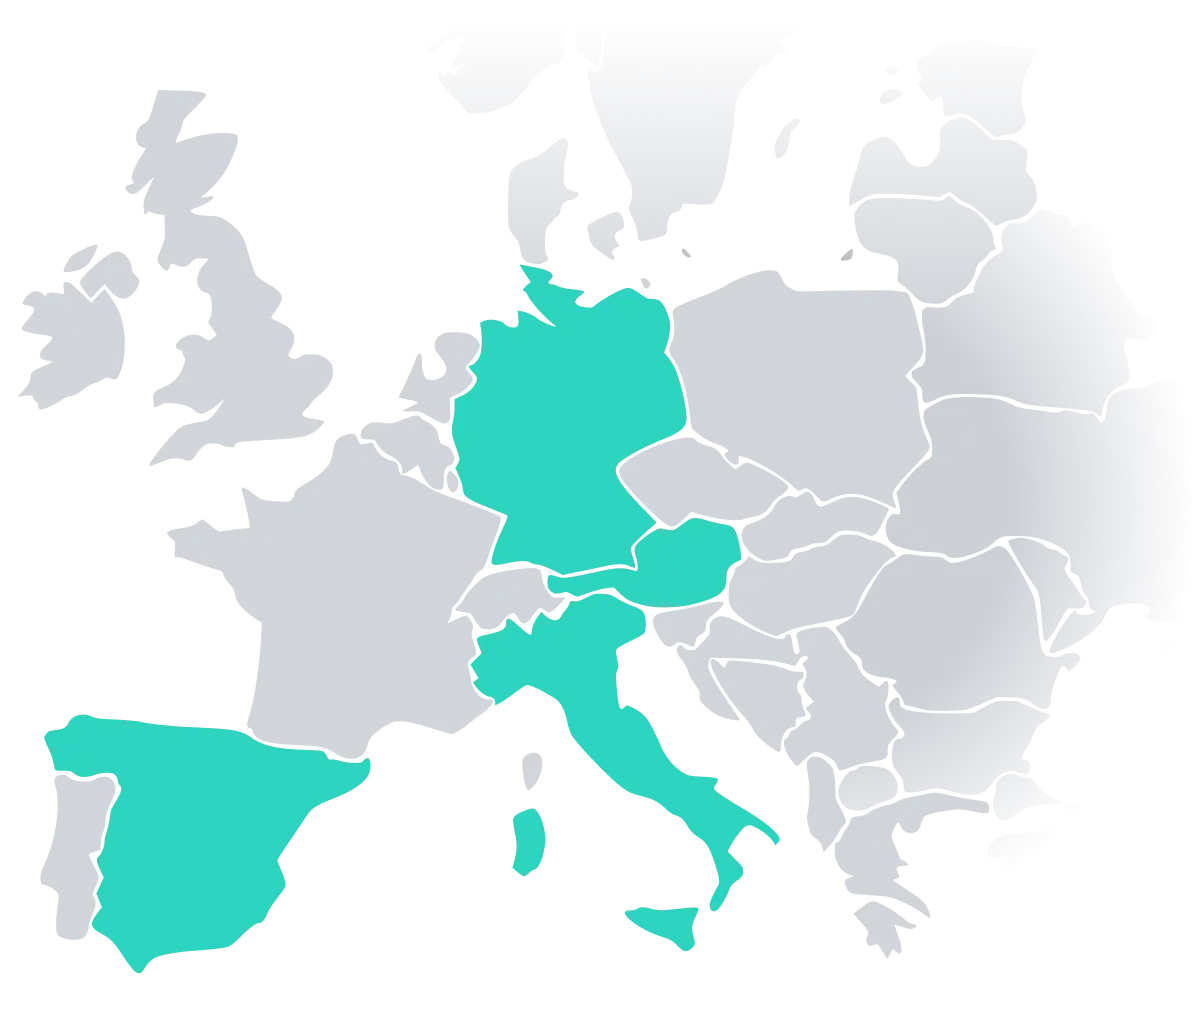 Mapa de Europa con Austria, Alemania, España e Italia marcados en verde para el cumplimiento de POS por fiskaly